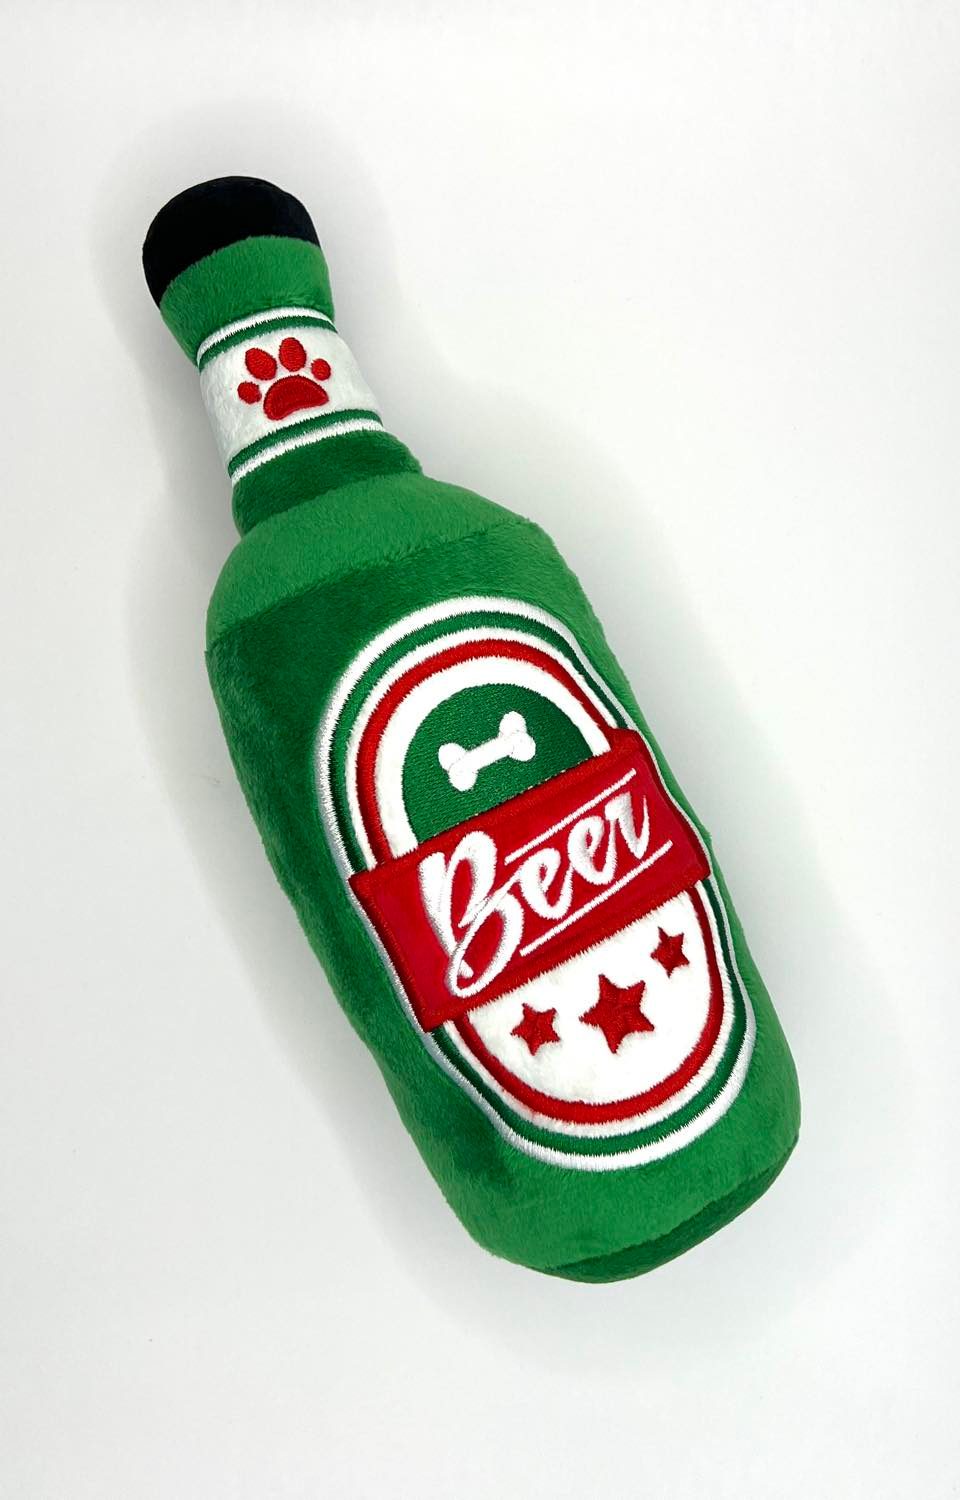 Beer Bottle Dog Toy